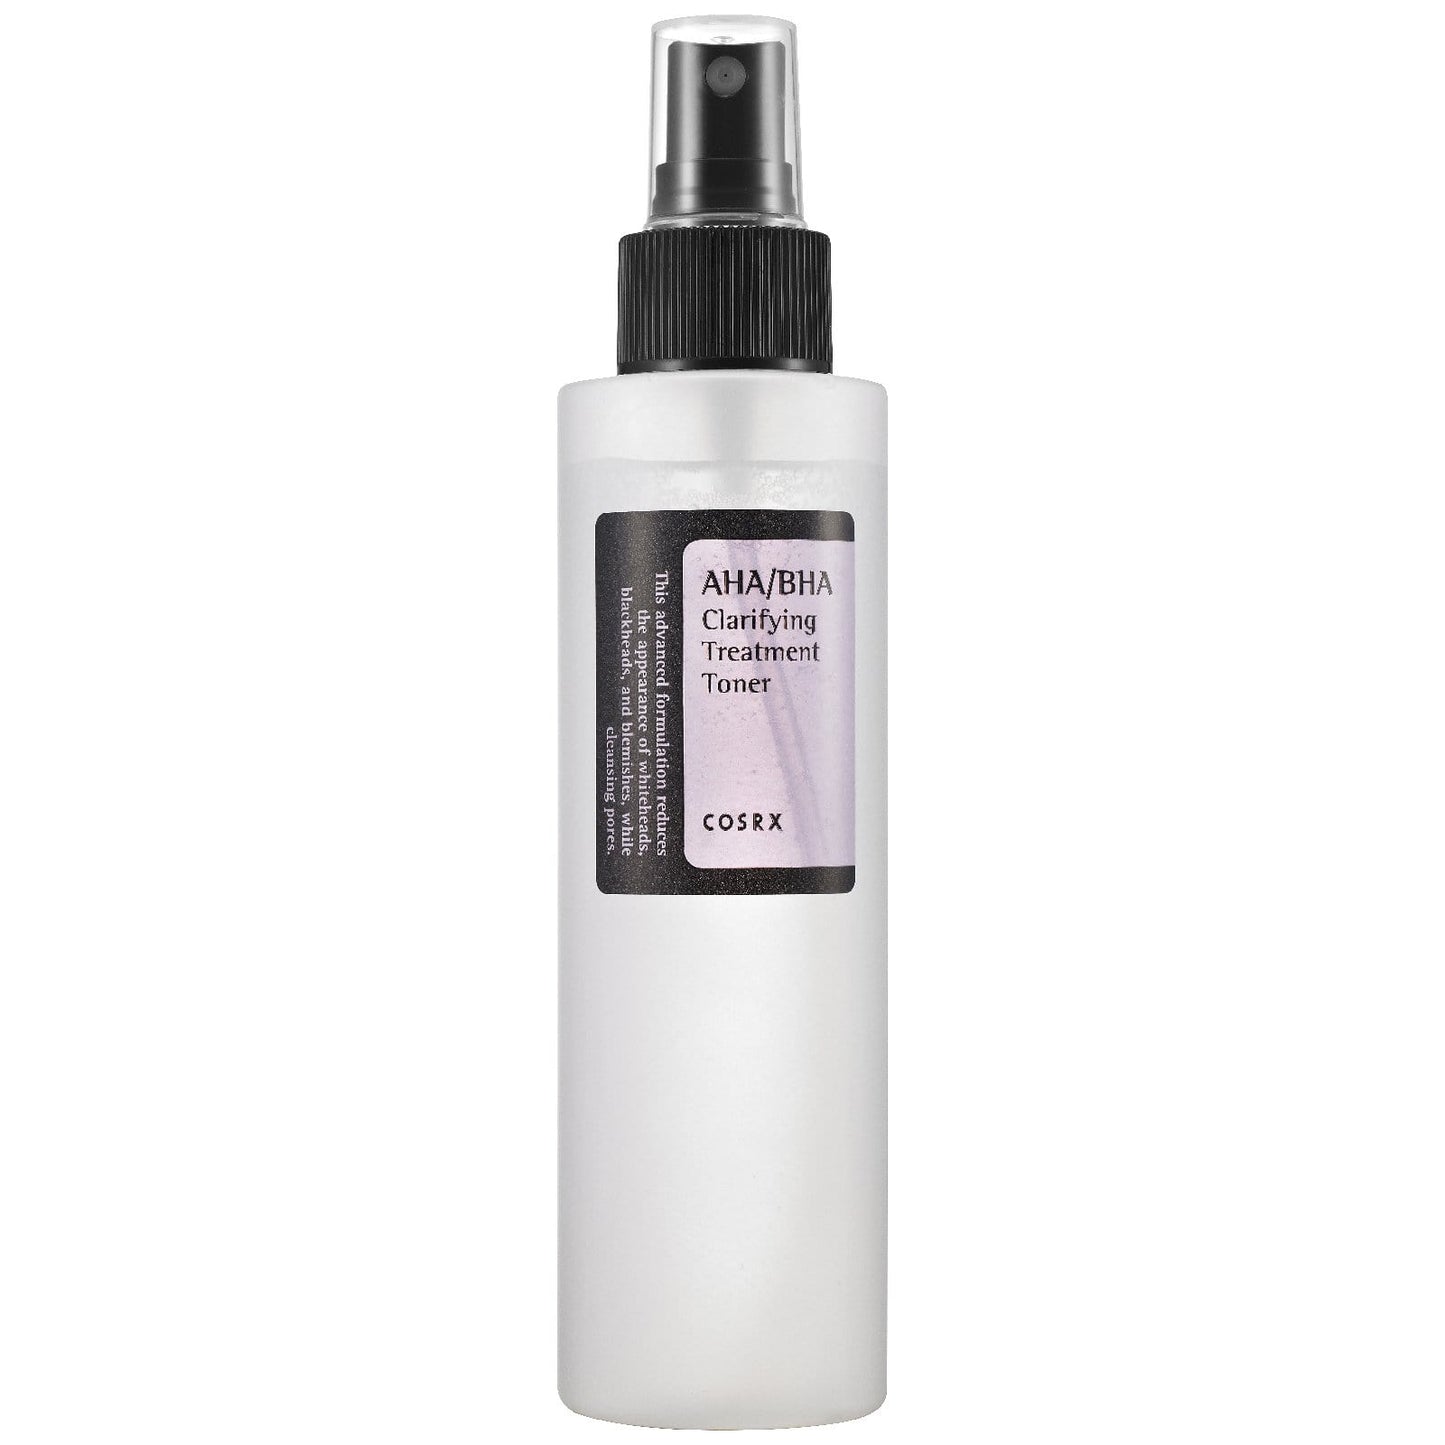 COSRX - Clarifying tonic lotion with AHA / BHA - 150 ml - Cosrx - Ethni Beauty Market